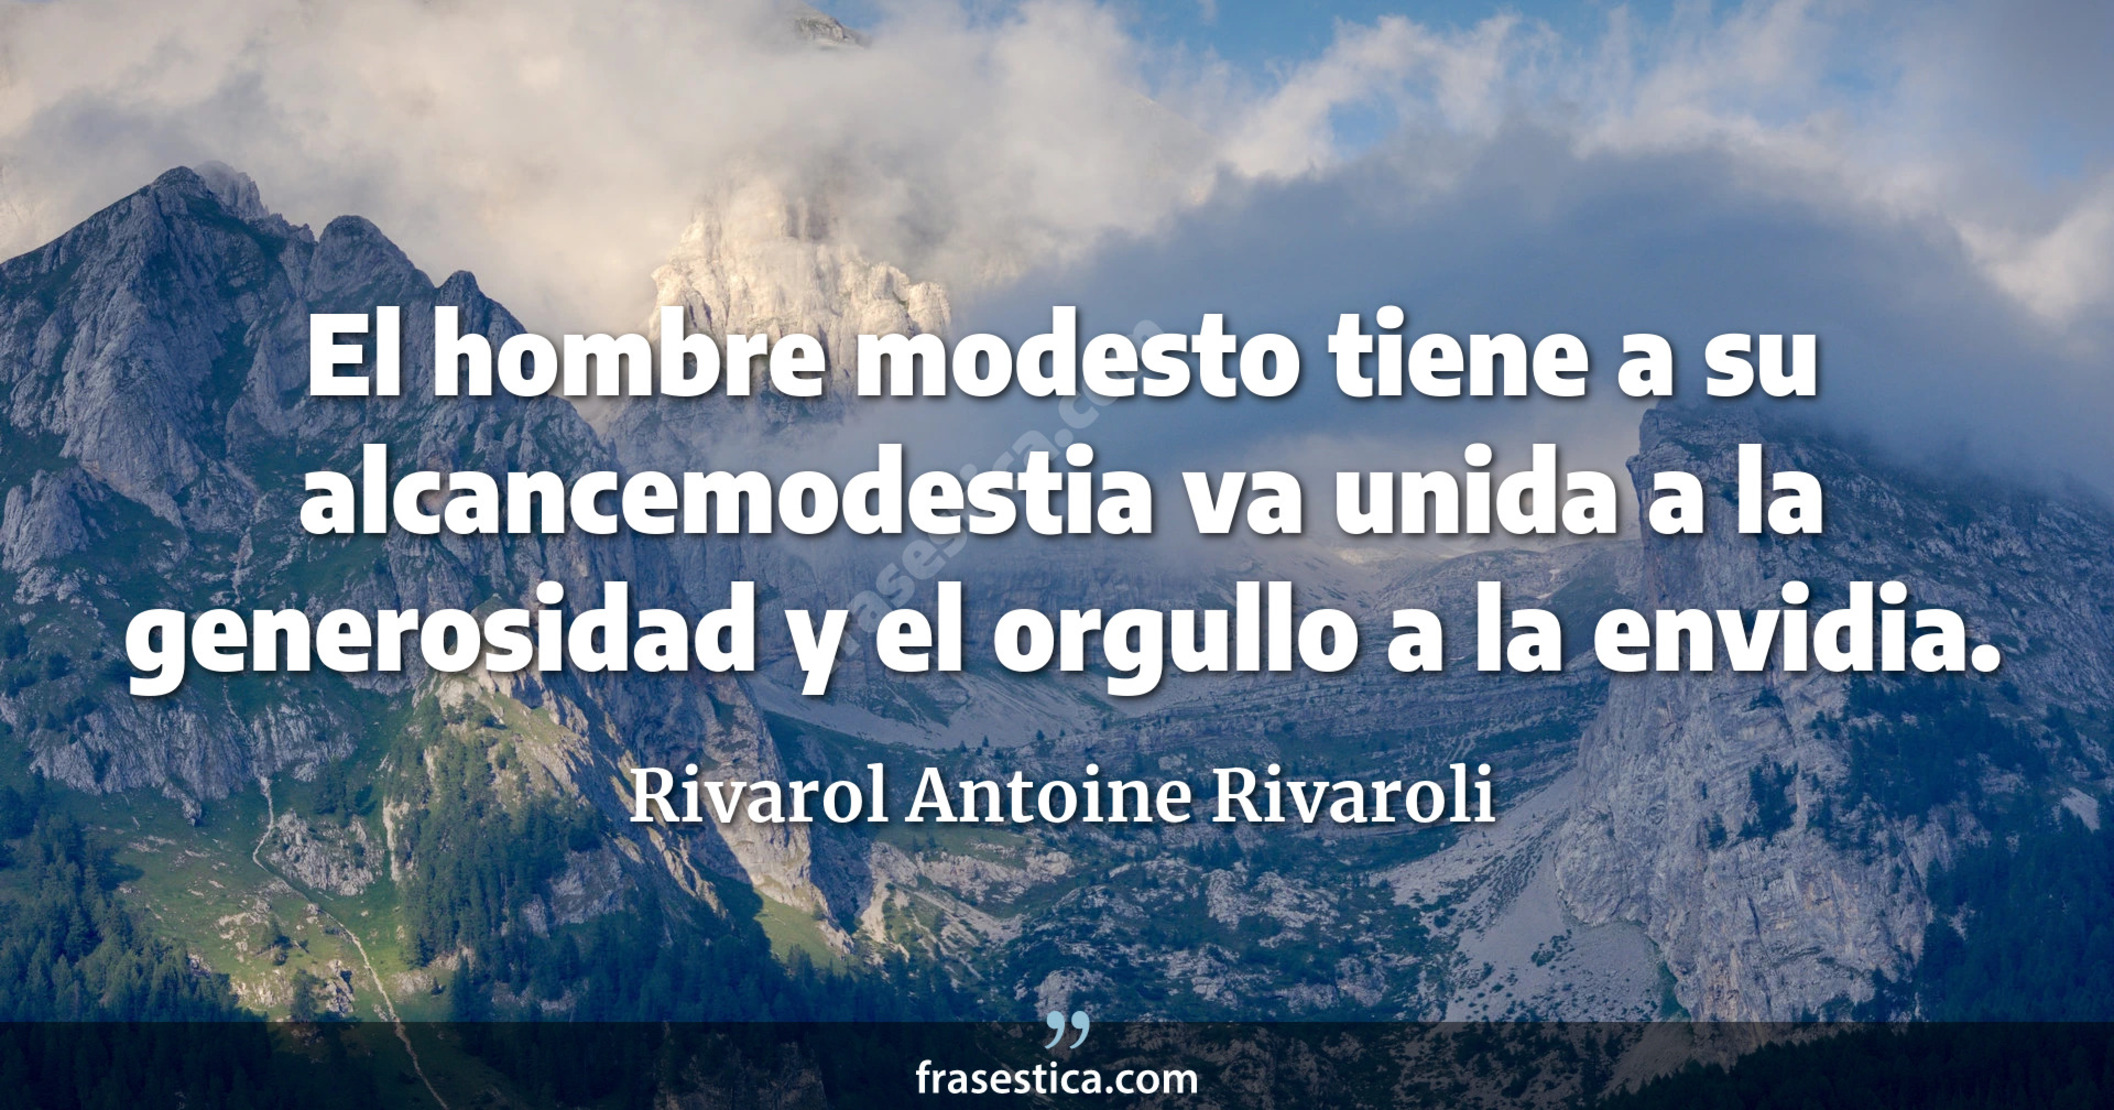 El hombre modesto tiene a su alcancemodestia va unida a la generosidad y el orgullo a la envidia. - Rivarol Antoine Rivaroli